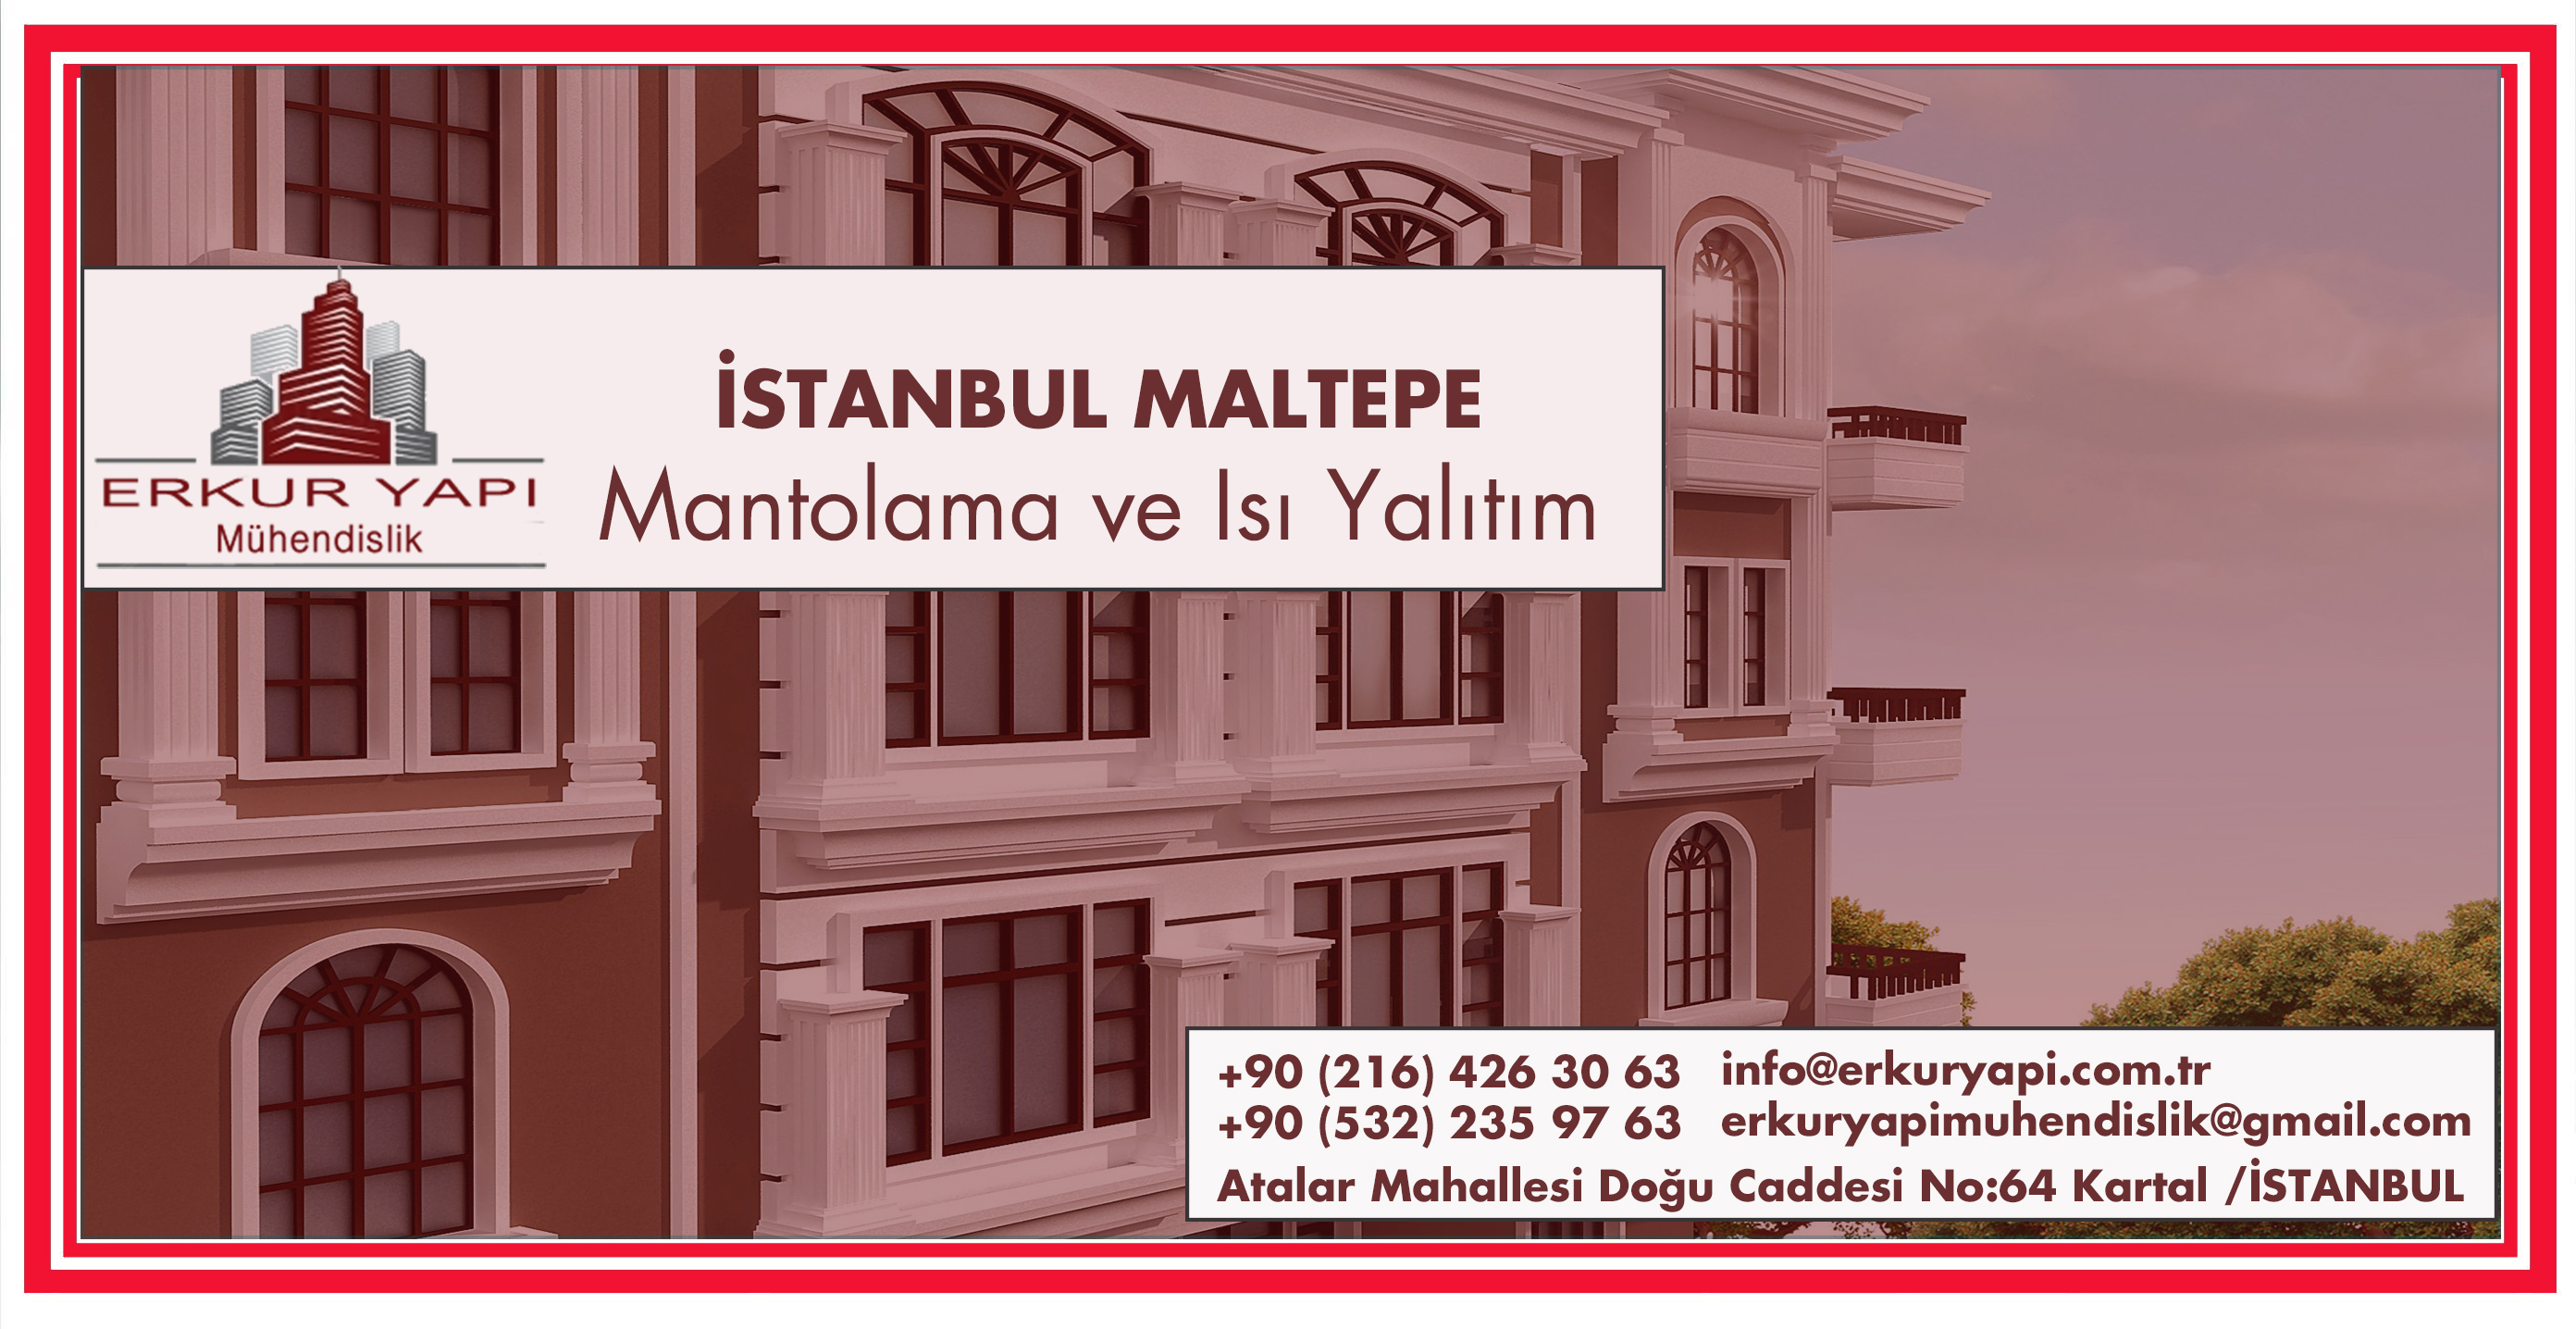 Istanbul Yalitim Sirketleri Kale Mantolama